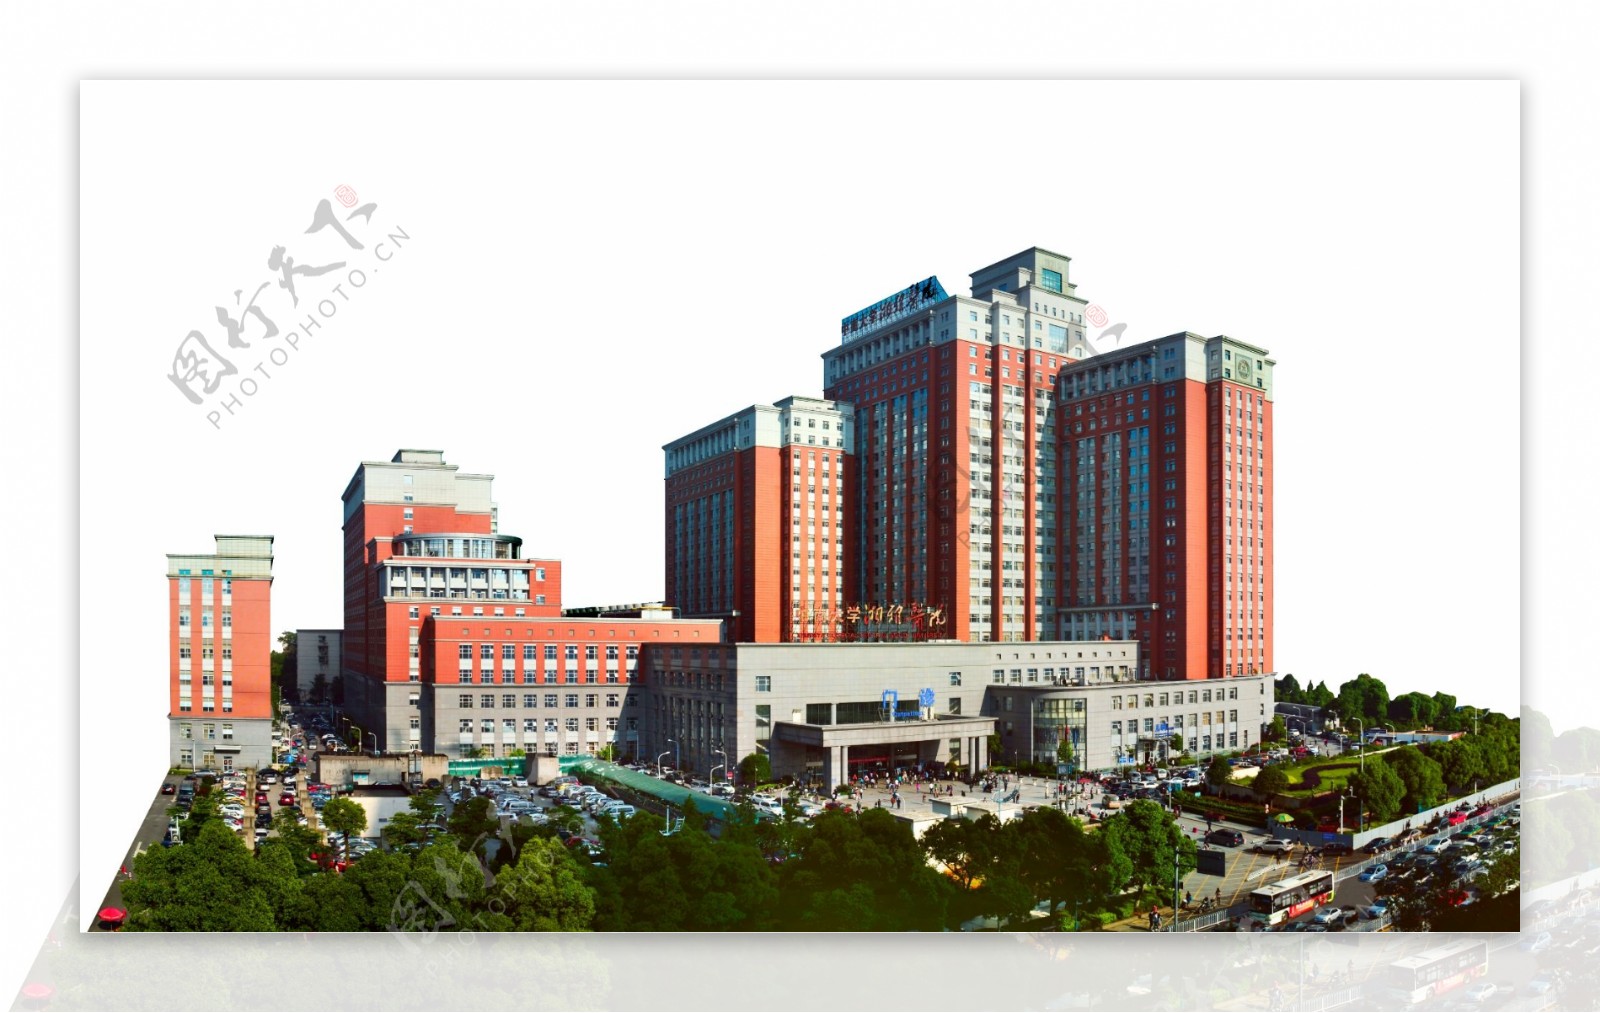 2010年鲁班奖-中南大学湘雅医院新医疗区医疗大楼工程_湖南省第六工程有限公司